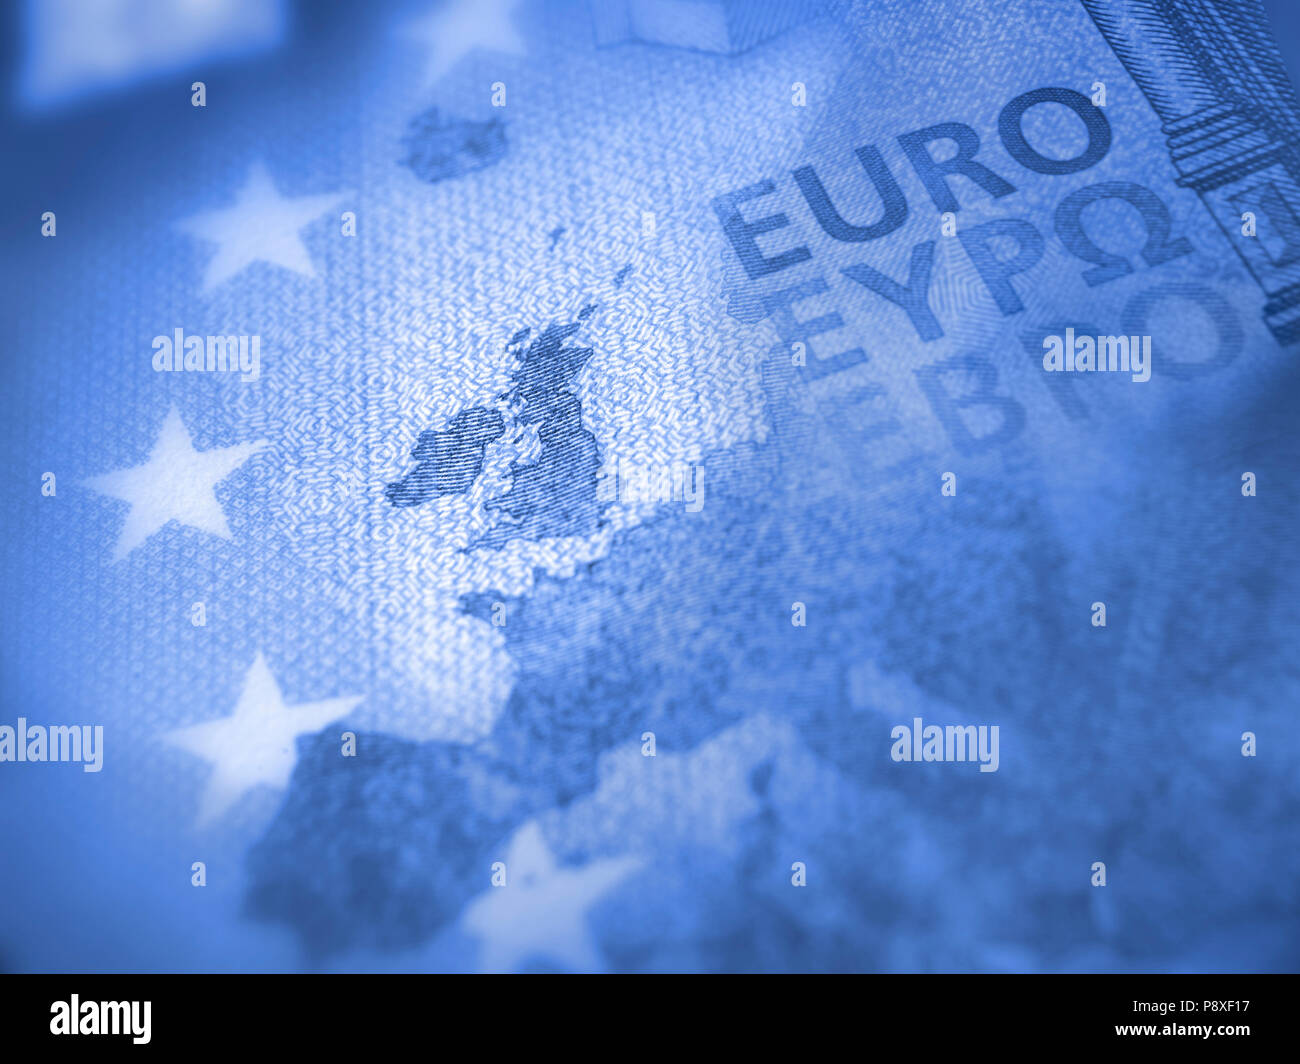 Flache Fokus auf euro Banknote. Detail der Europa Karte mit Fokus auf Großbritannien. Blauen Farbton. Stockfoto